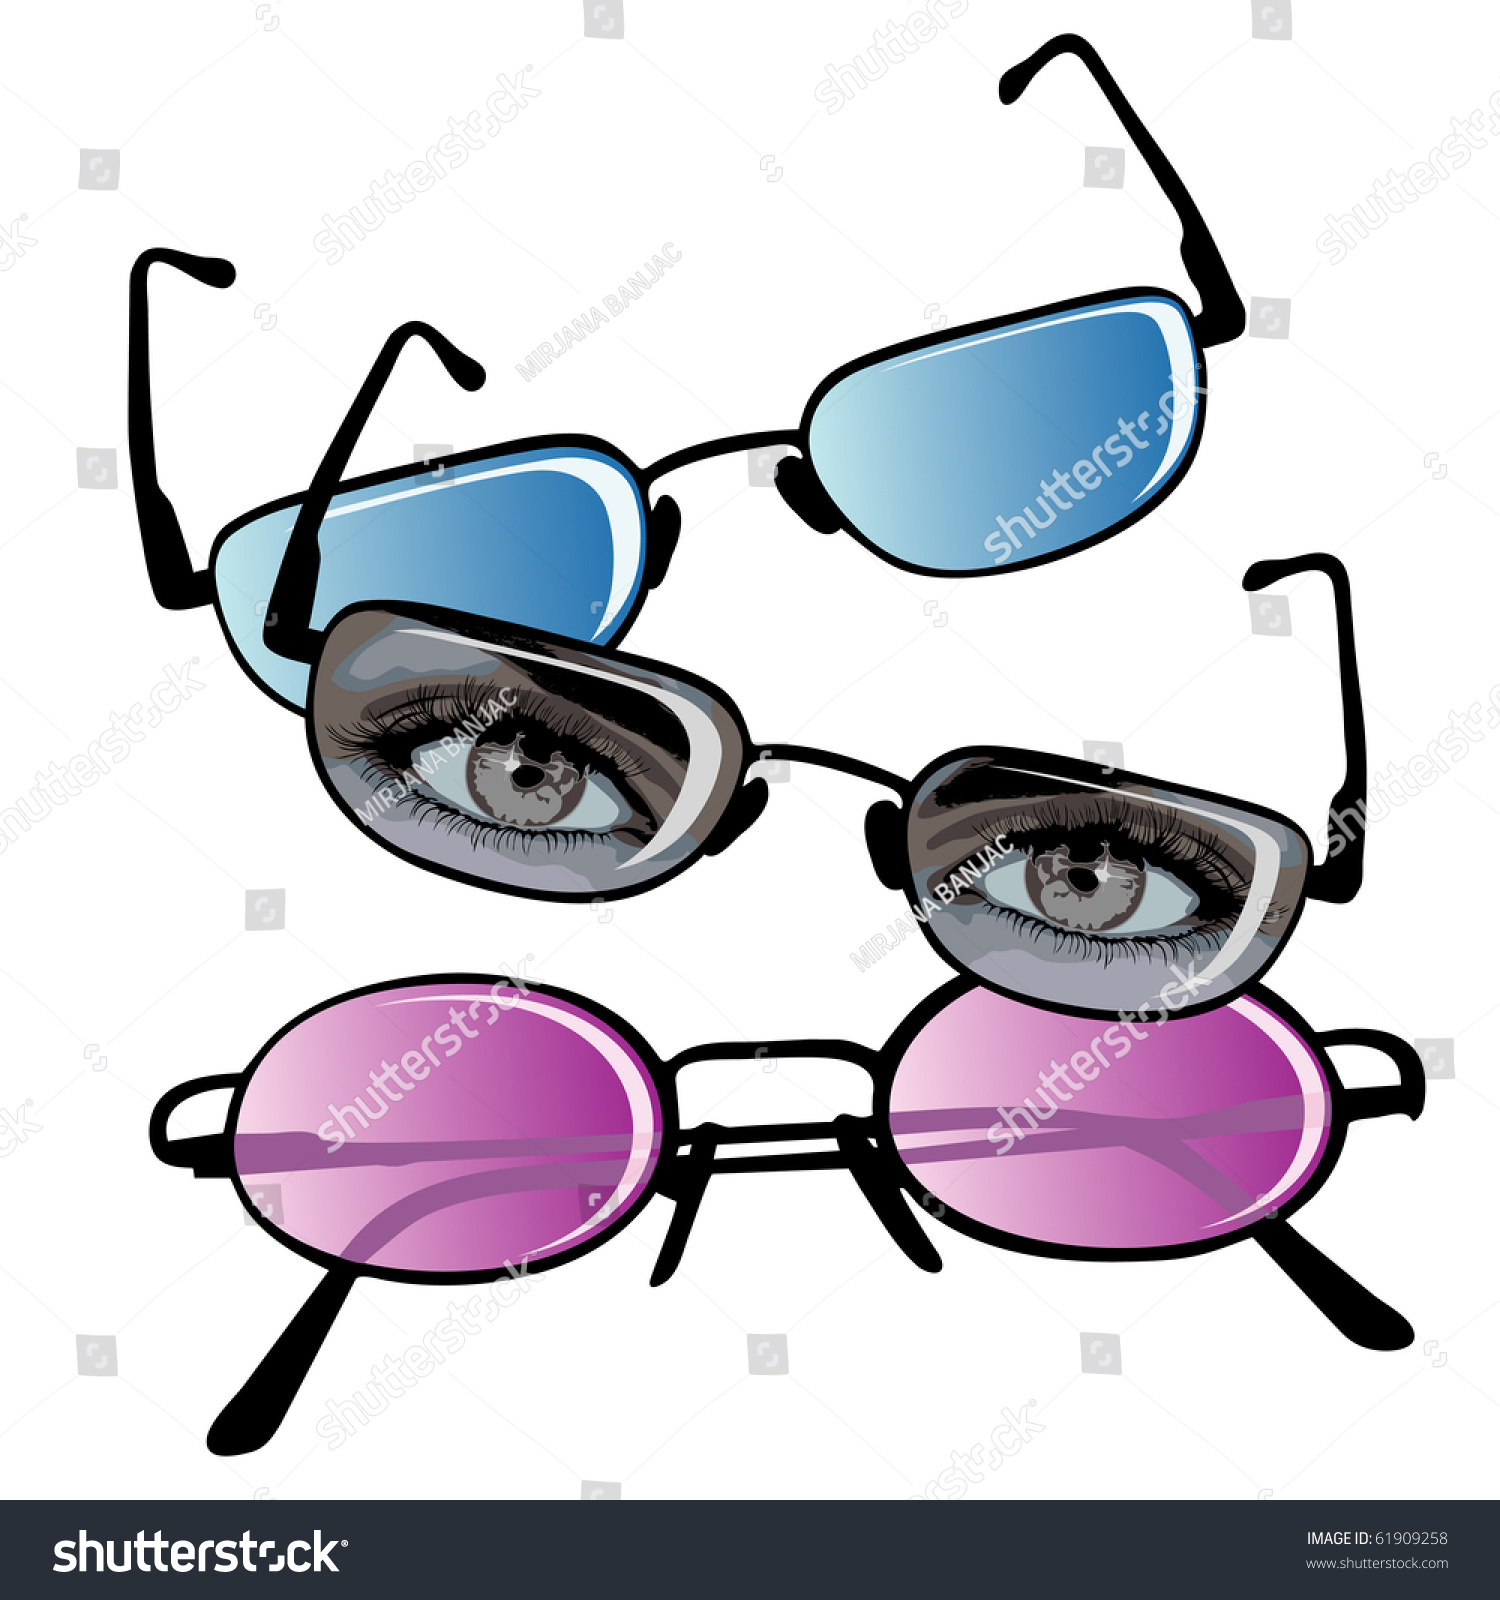 stockbroker with eye glasses